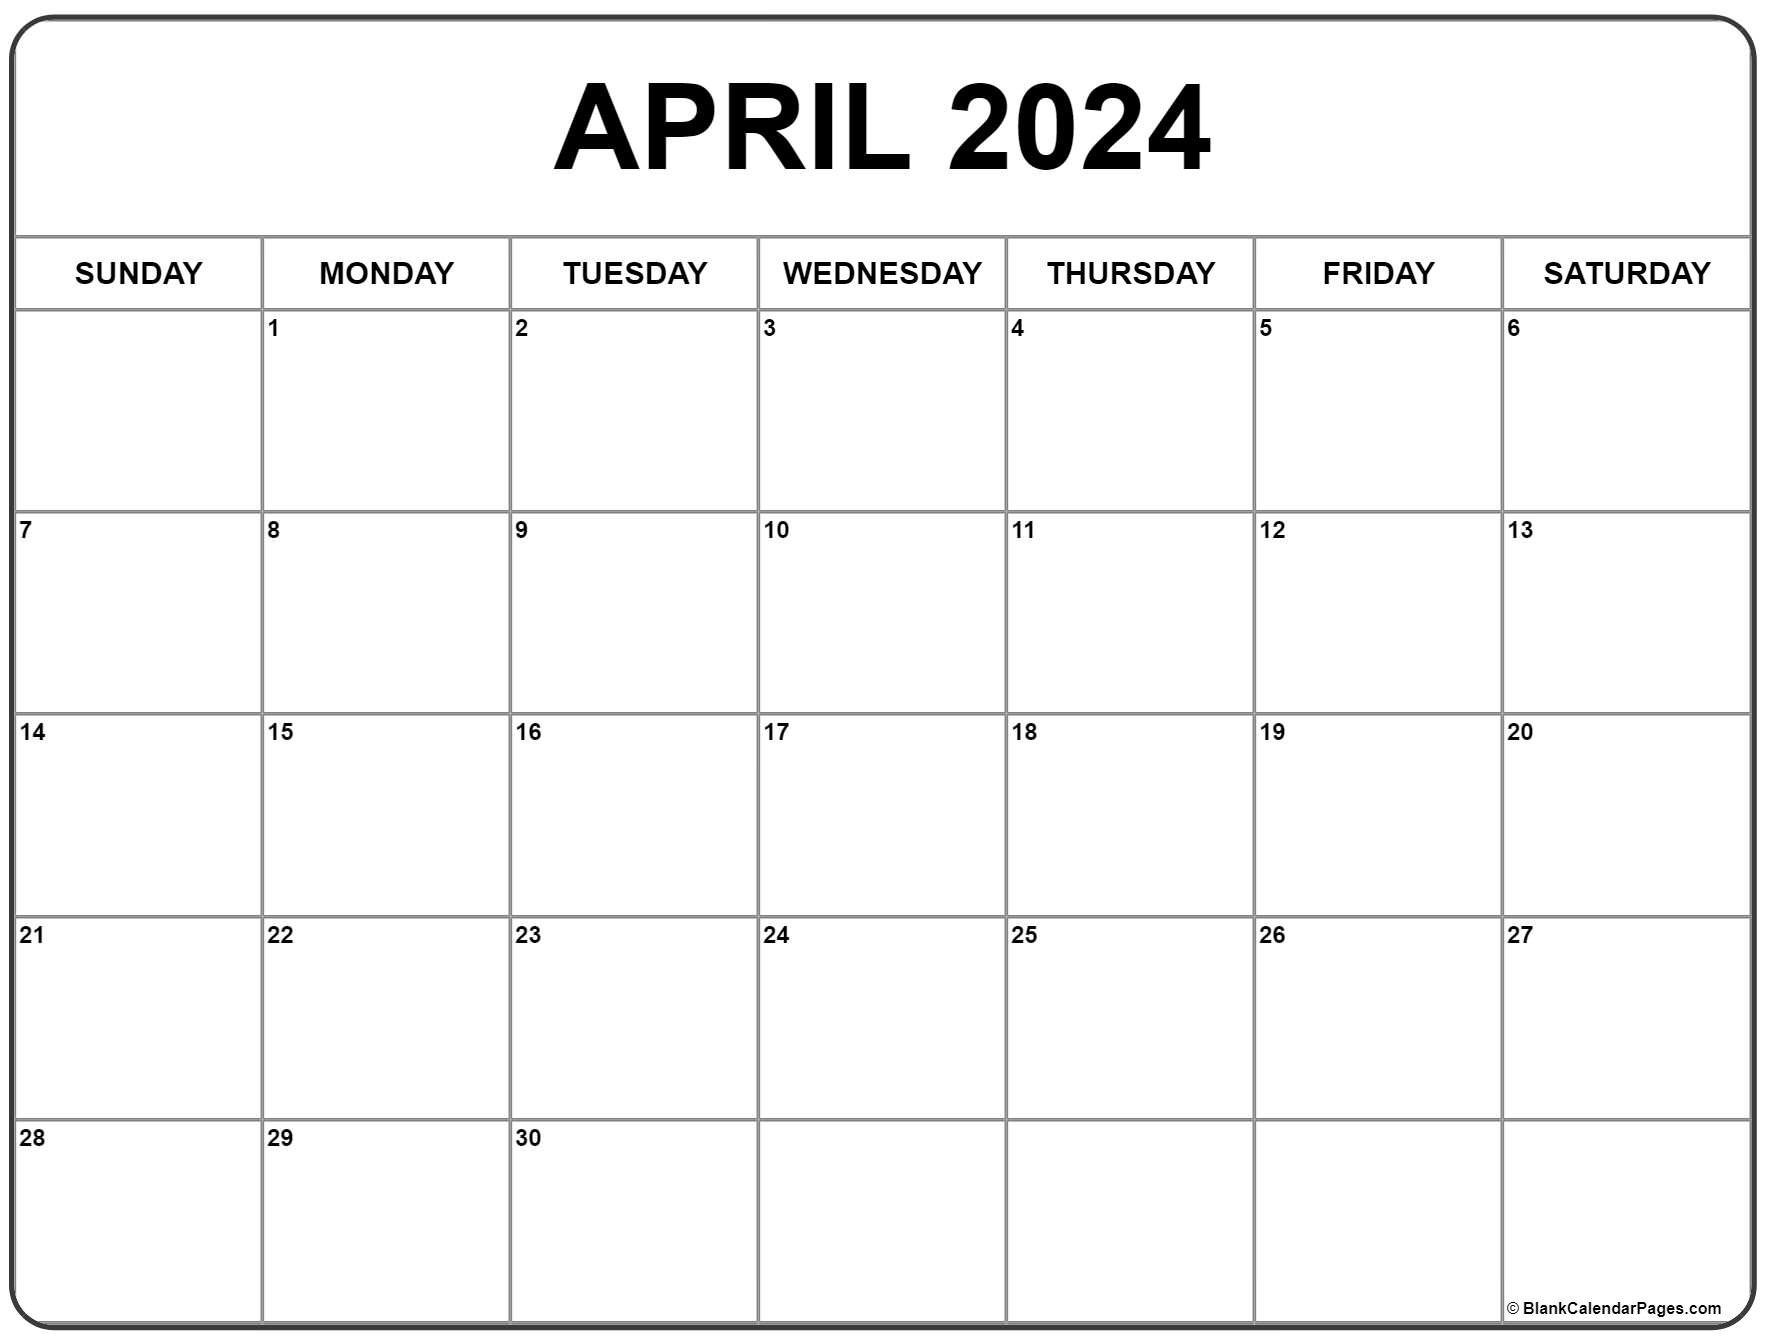 April 2024 Calendar | Free Printable Calendar for Free Printable 2024 April Calendar